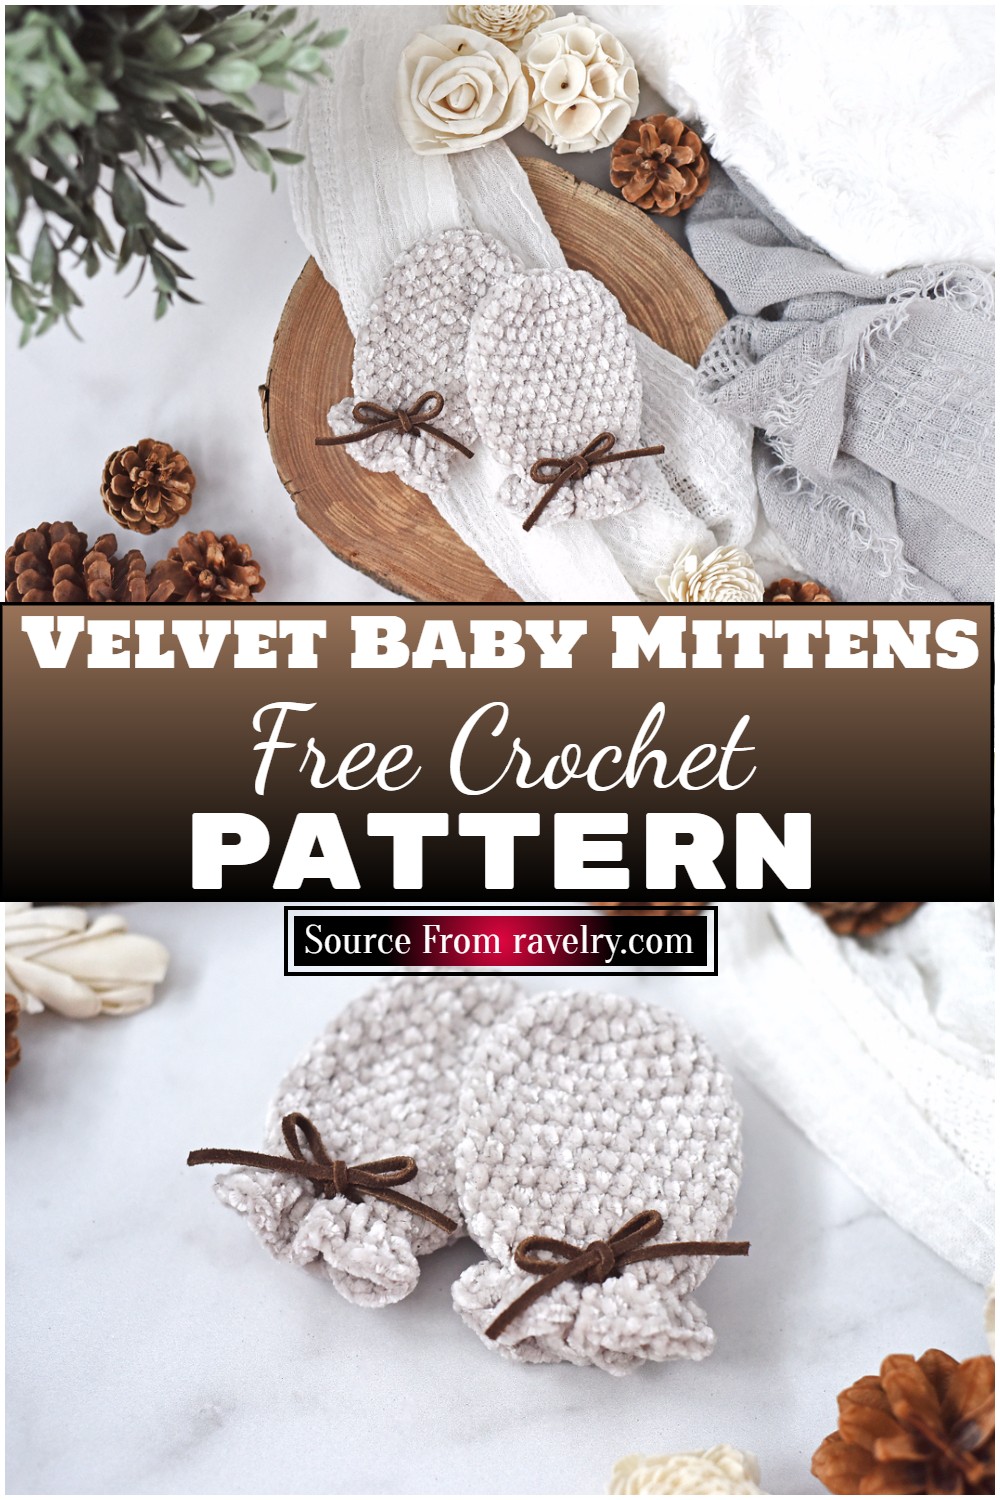 Free Crochet Velvet Baby Mittens Pattern